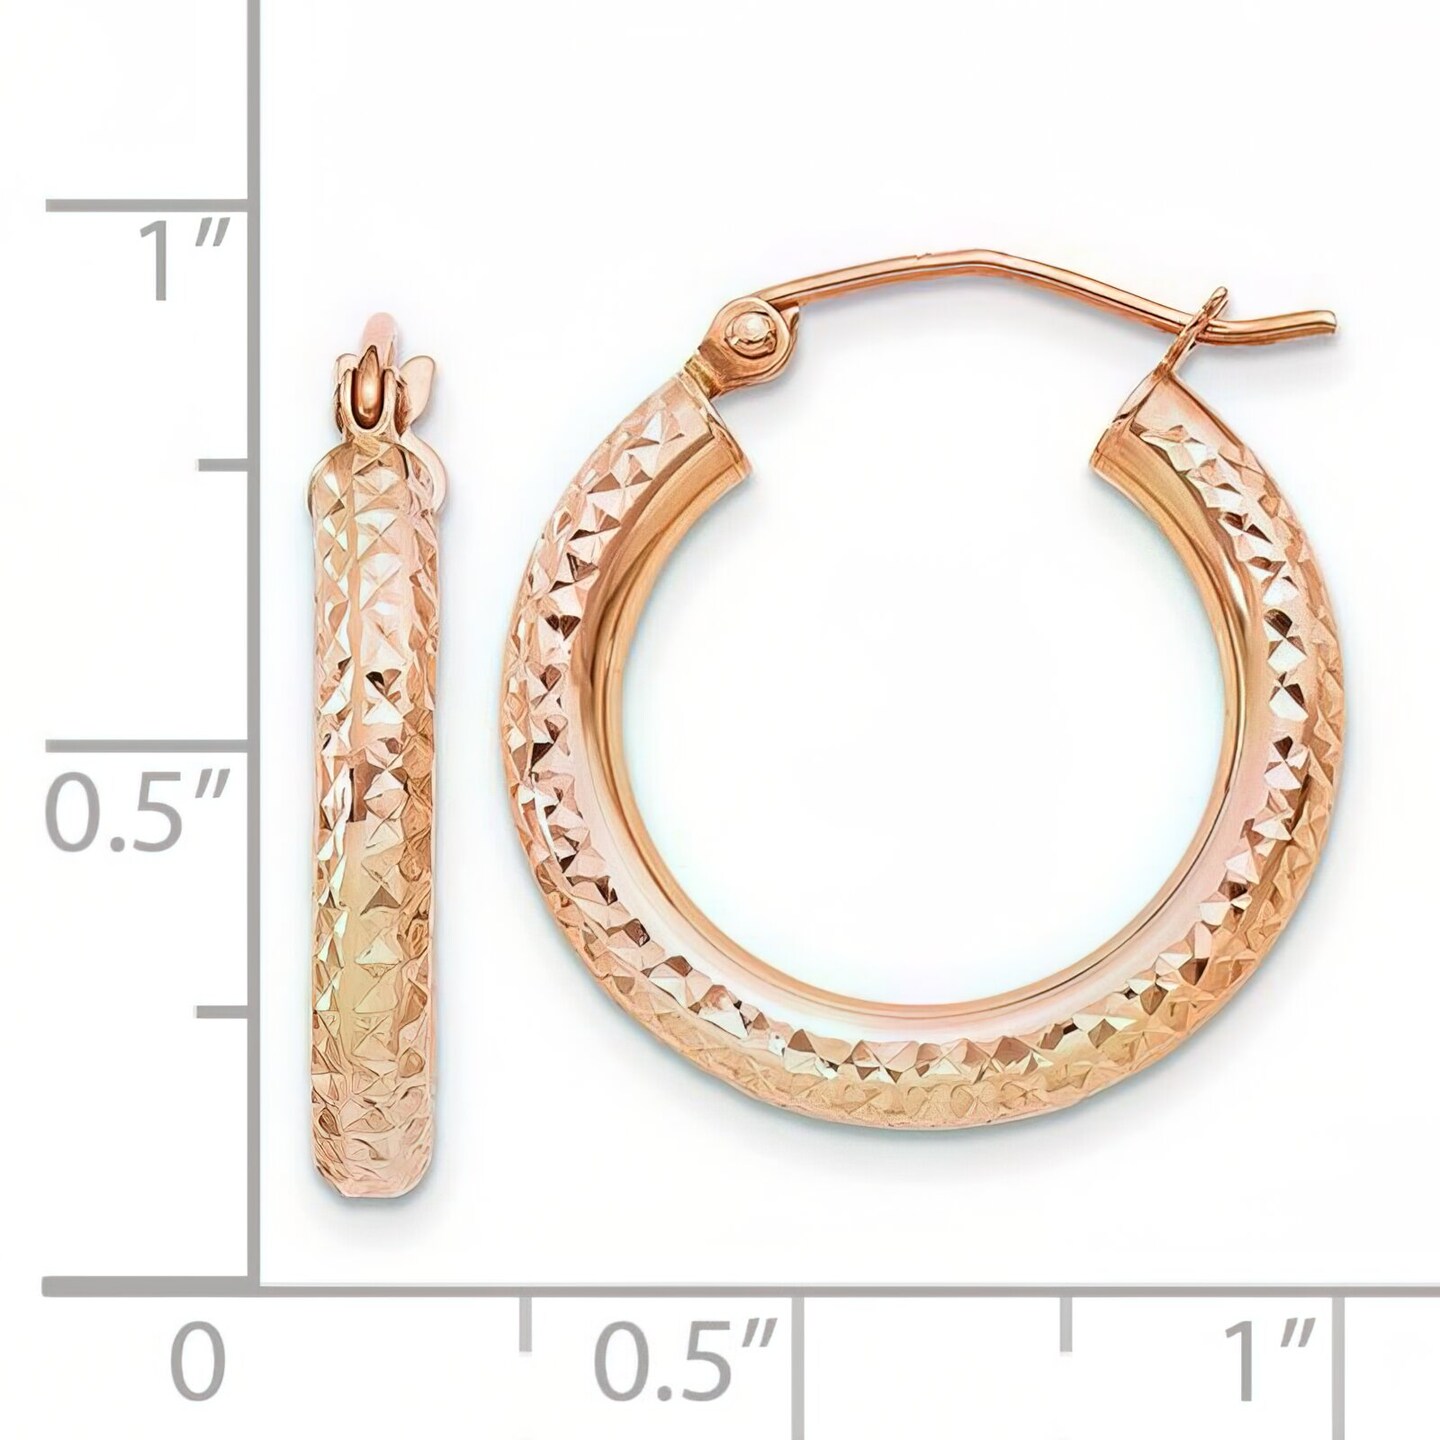 14K Rose Gold Hoop Earrings Jewelry FindingKing 22mm x 20mm